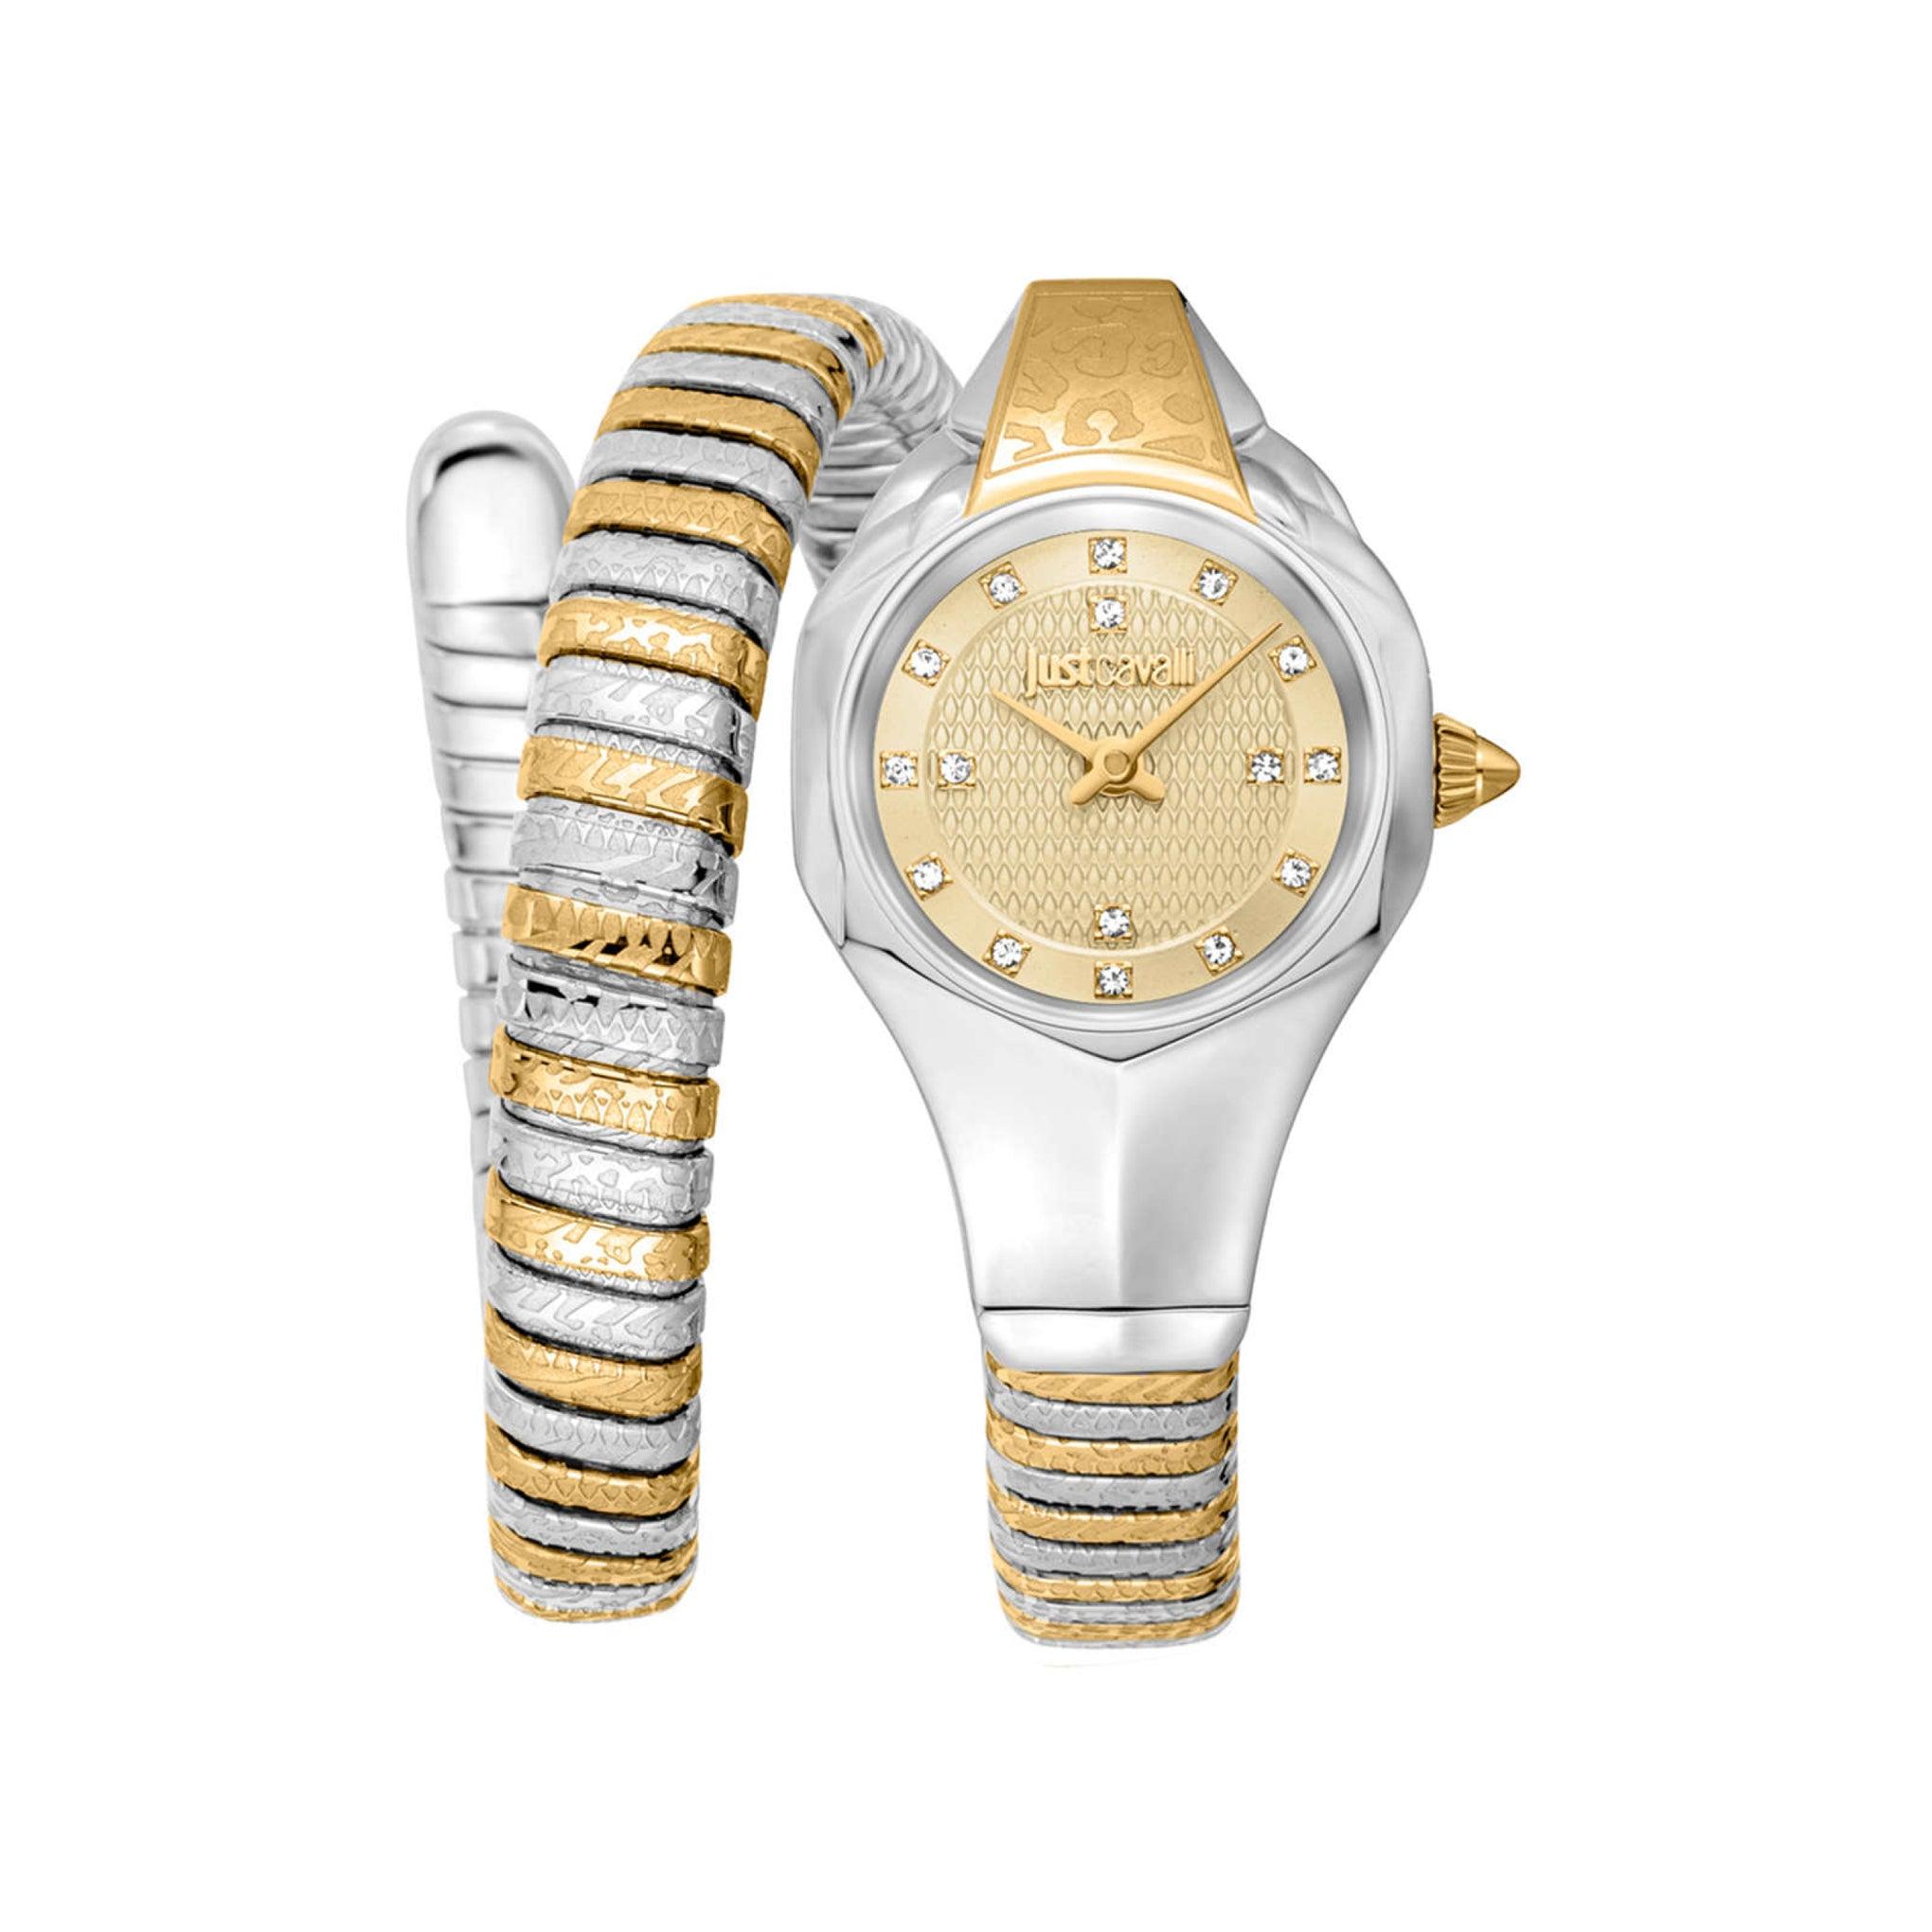 ساعة يد نسائية بشكل ثعبان - فضي و ذهبي - بحزام معدني مقاوم للصدأ جست كافالي Just Cavalli Women's Amalfi Silver Gold Stainless Steel Watch